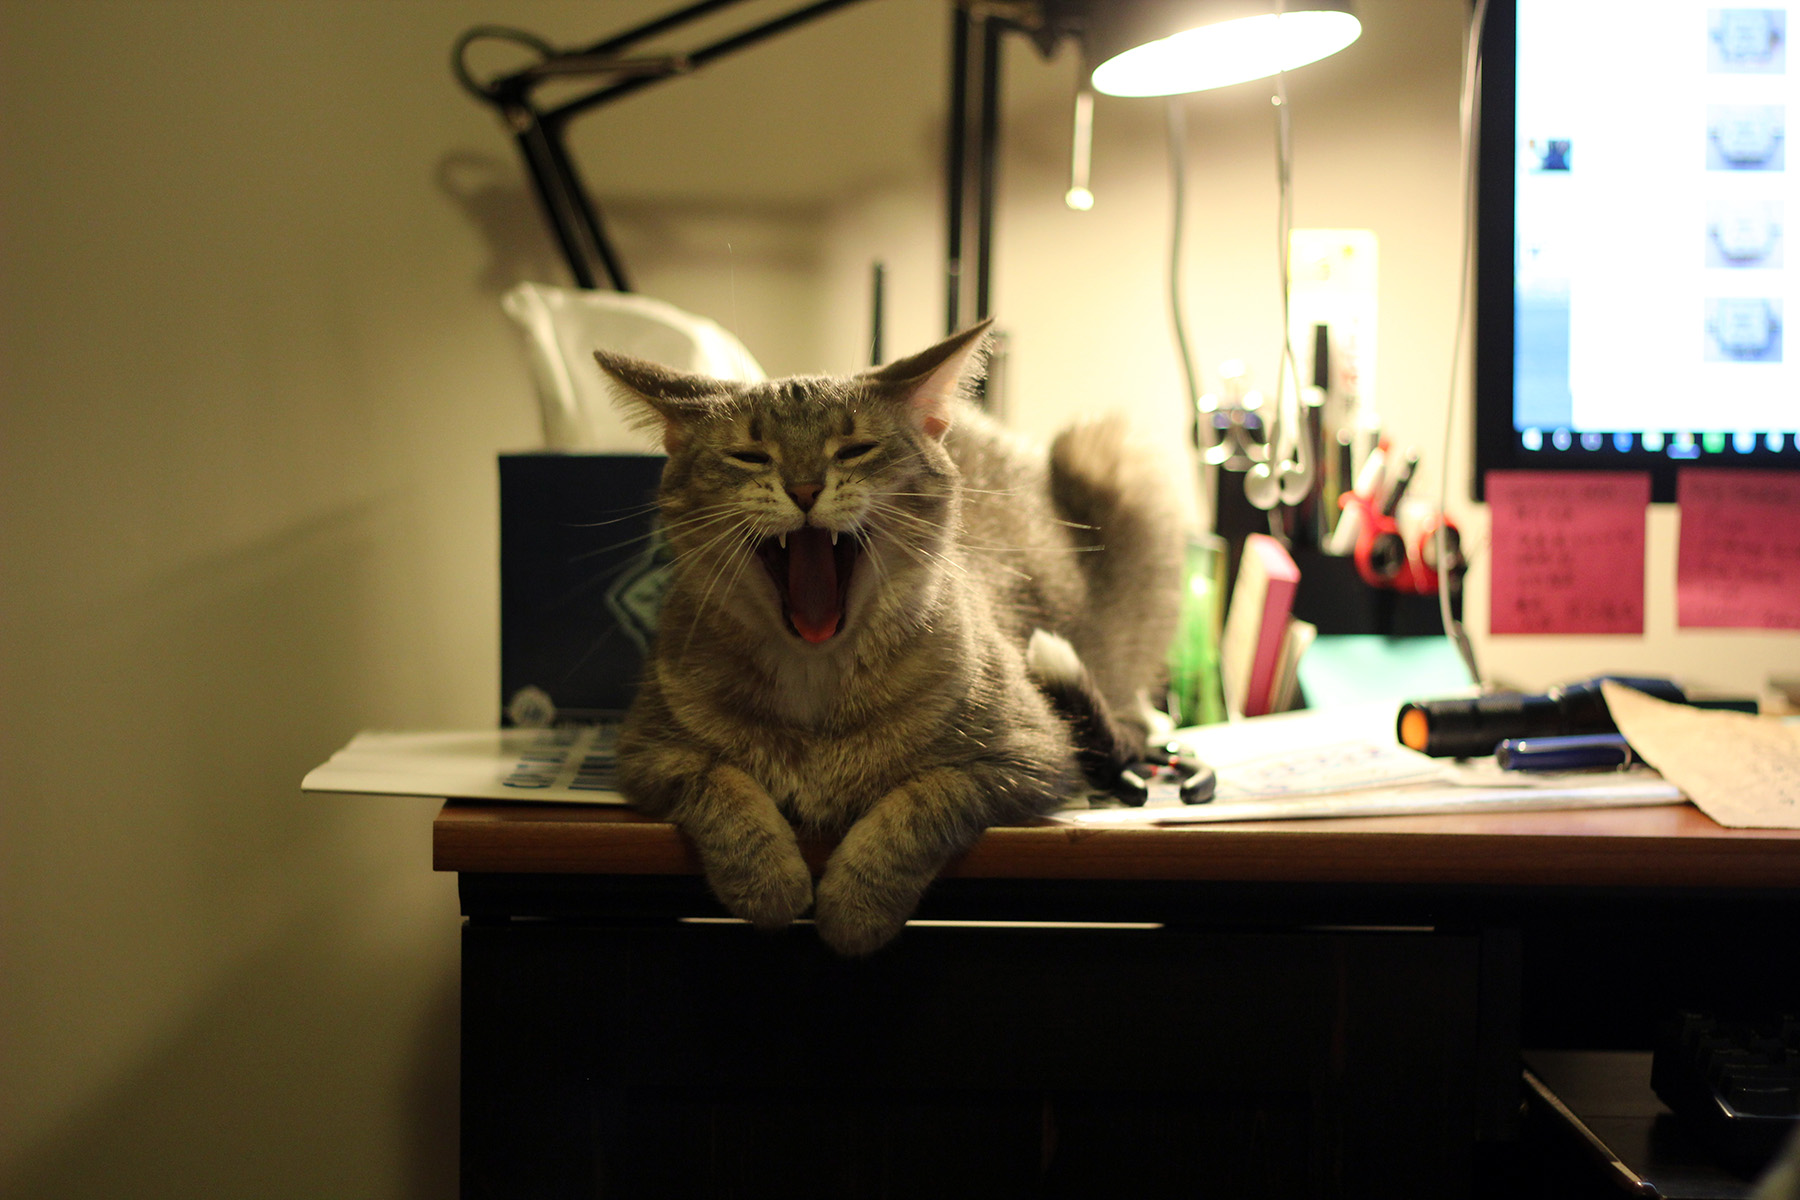 Huita yawning